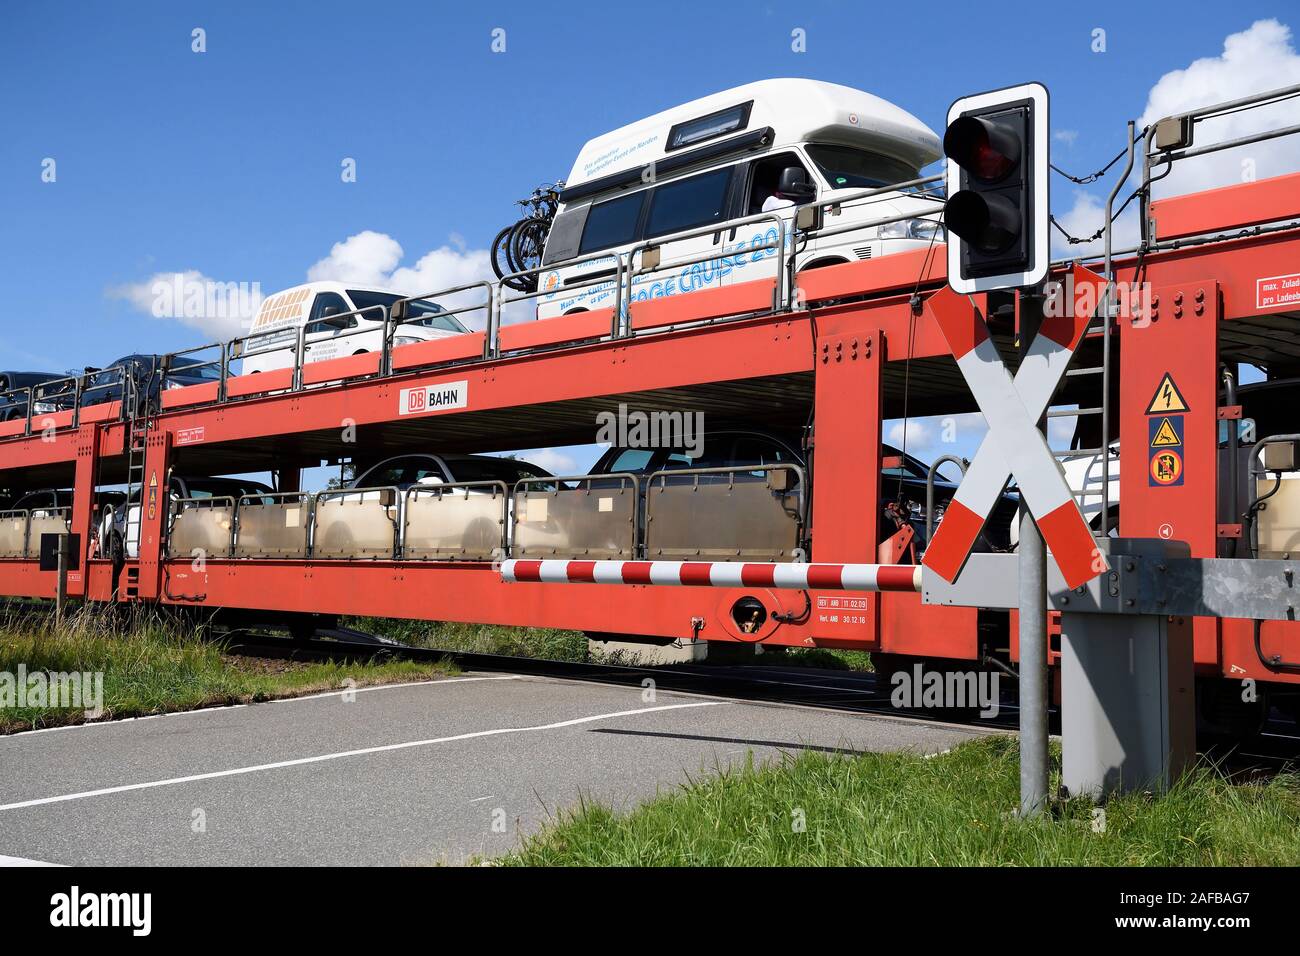 Autozug, Sylt Shuttle, Verbindung der Insel Sylt mit dem Festland, Sylt, nordfriesische Inseln, Nordfriesland, Schleswig-Holstein, Deutschland Stock Photo